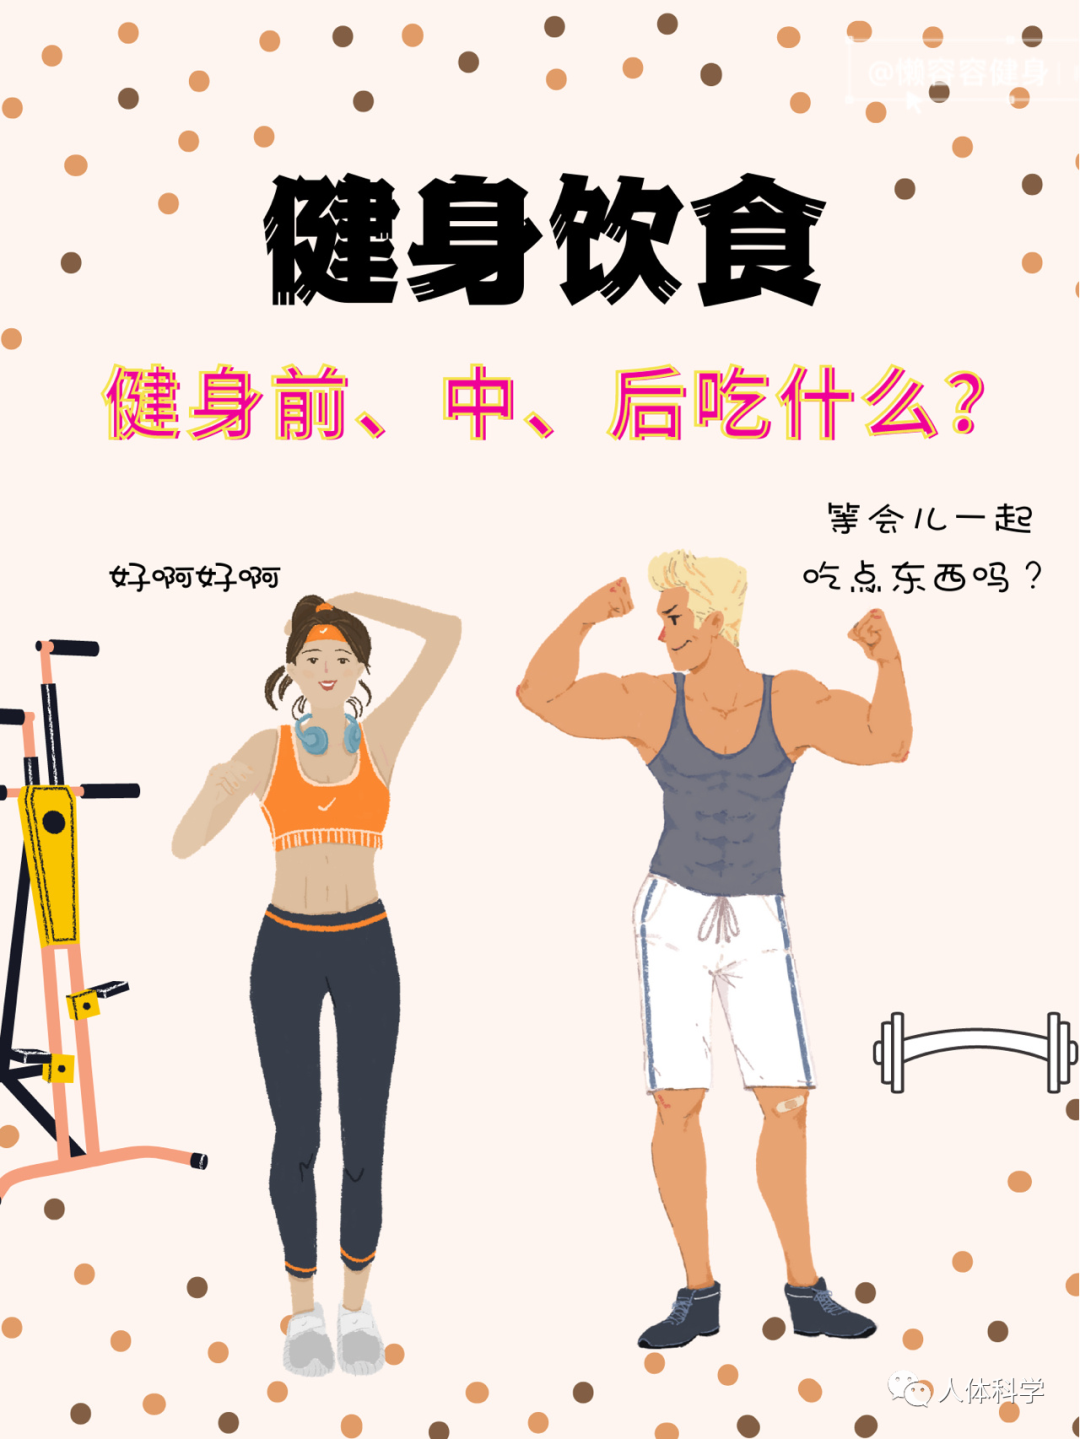 国产健身教练肌肉帅哥单琦 肌肉男模健身房自拍 中国 写真 肌肉宝宝